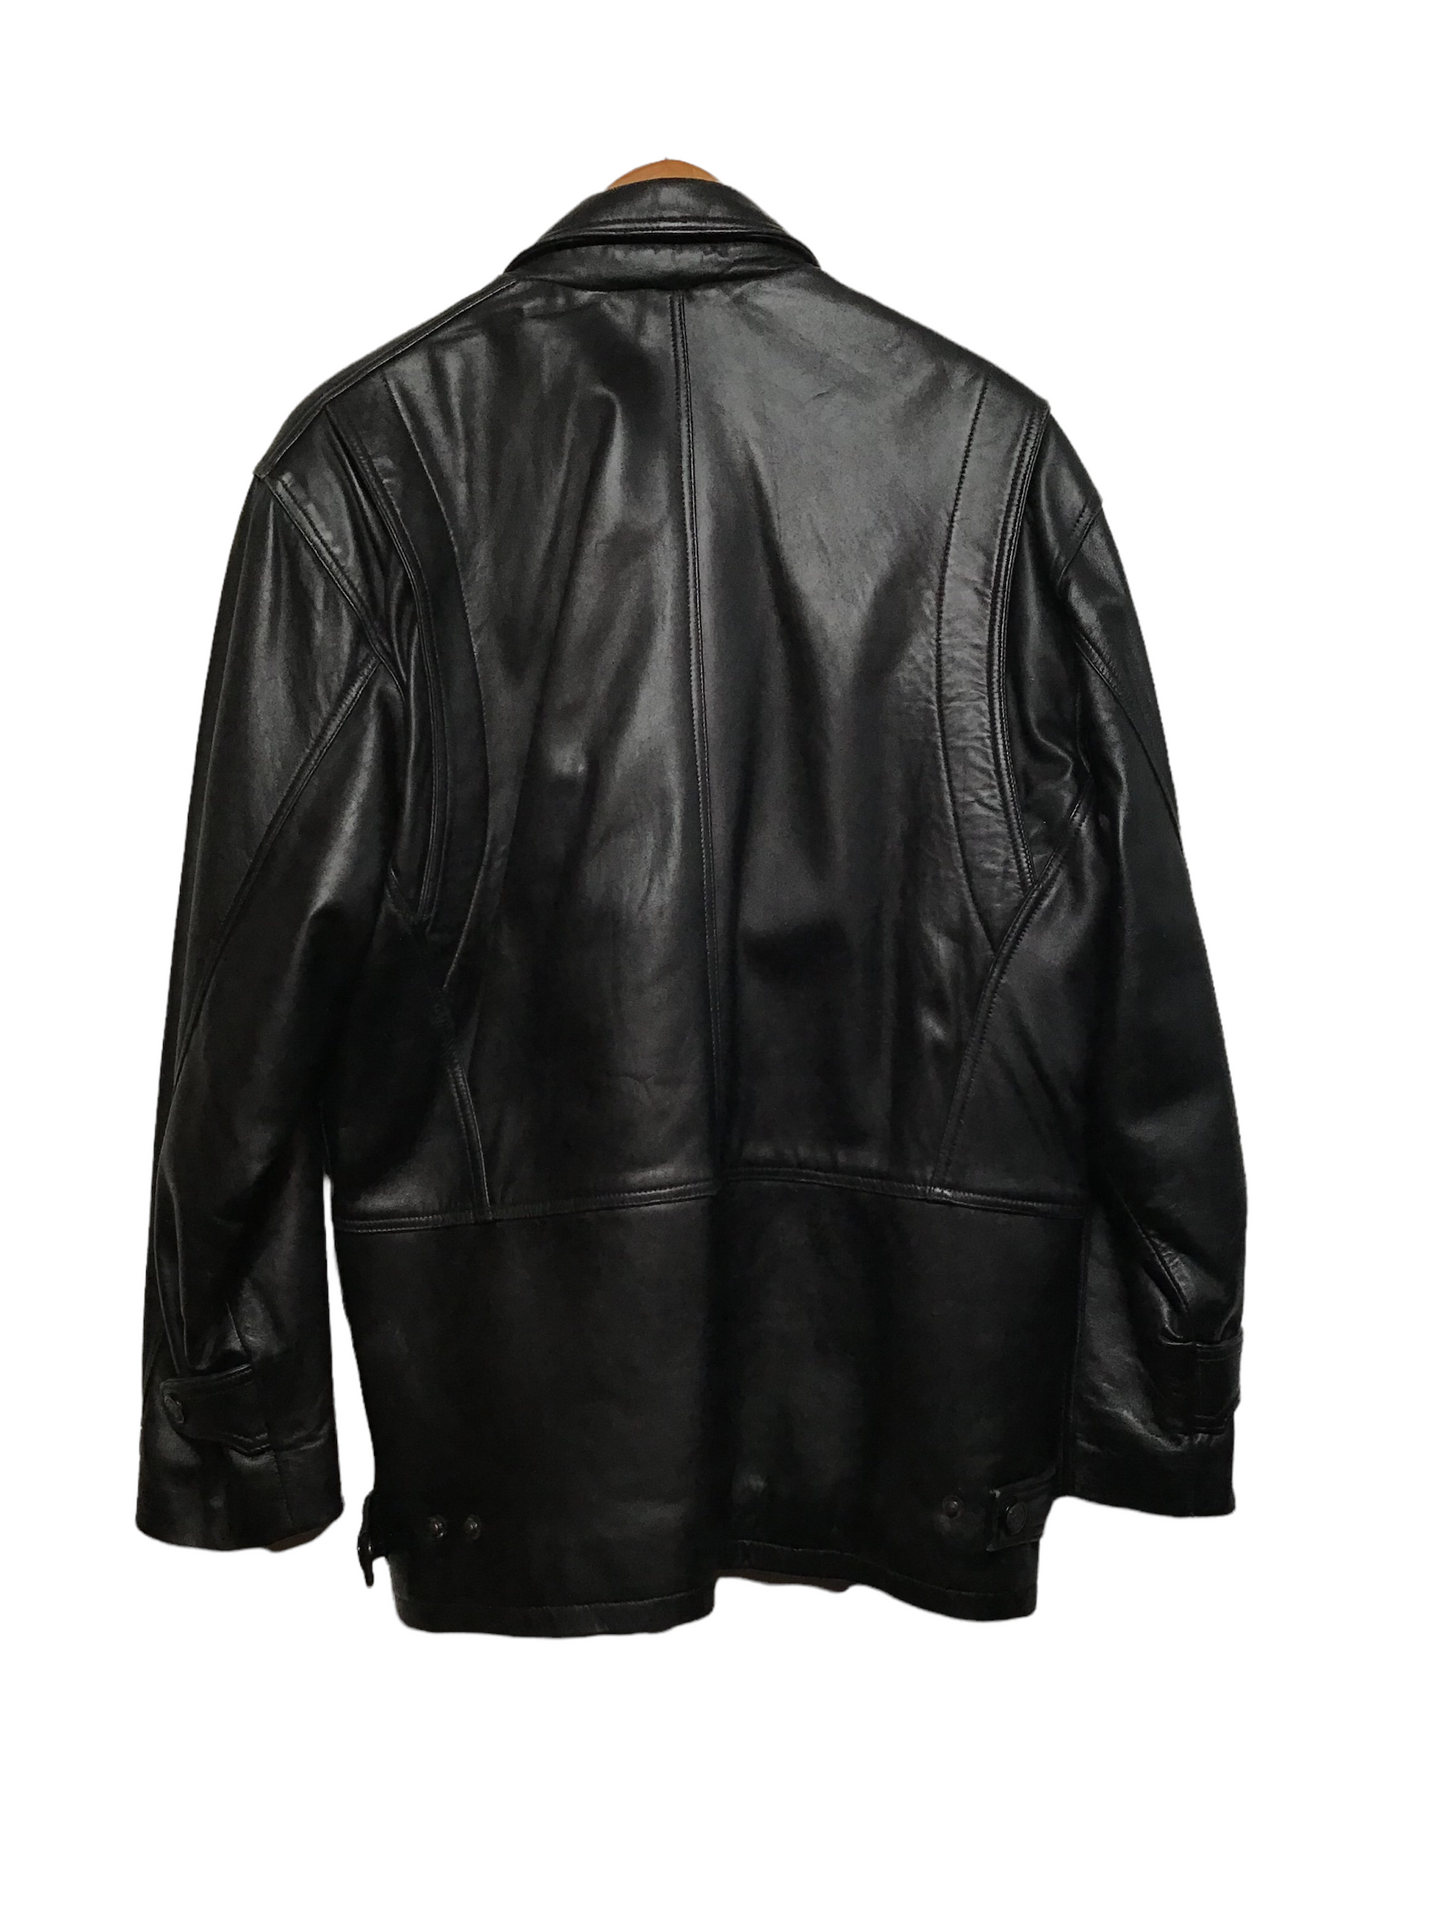 Black Leather Coat (Size M)